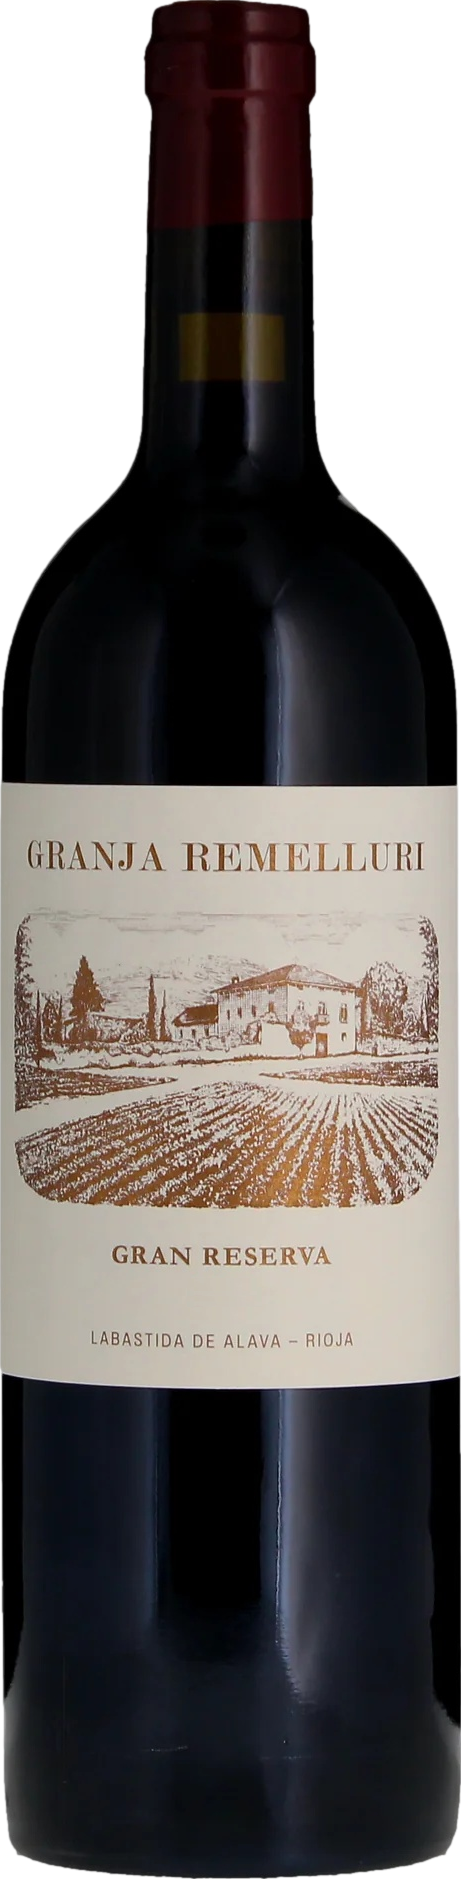 Remelluri Granja Gran Reserva Rioja 2012